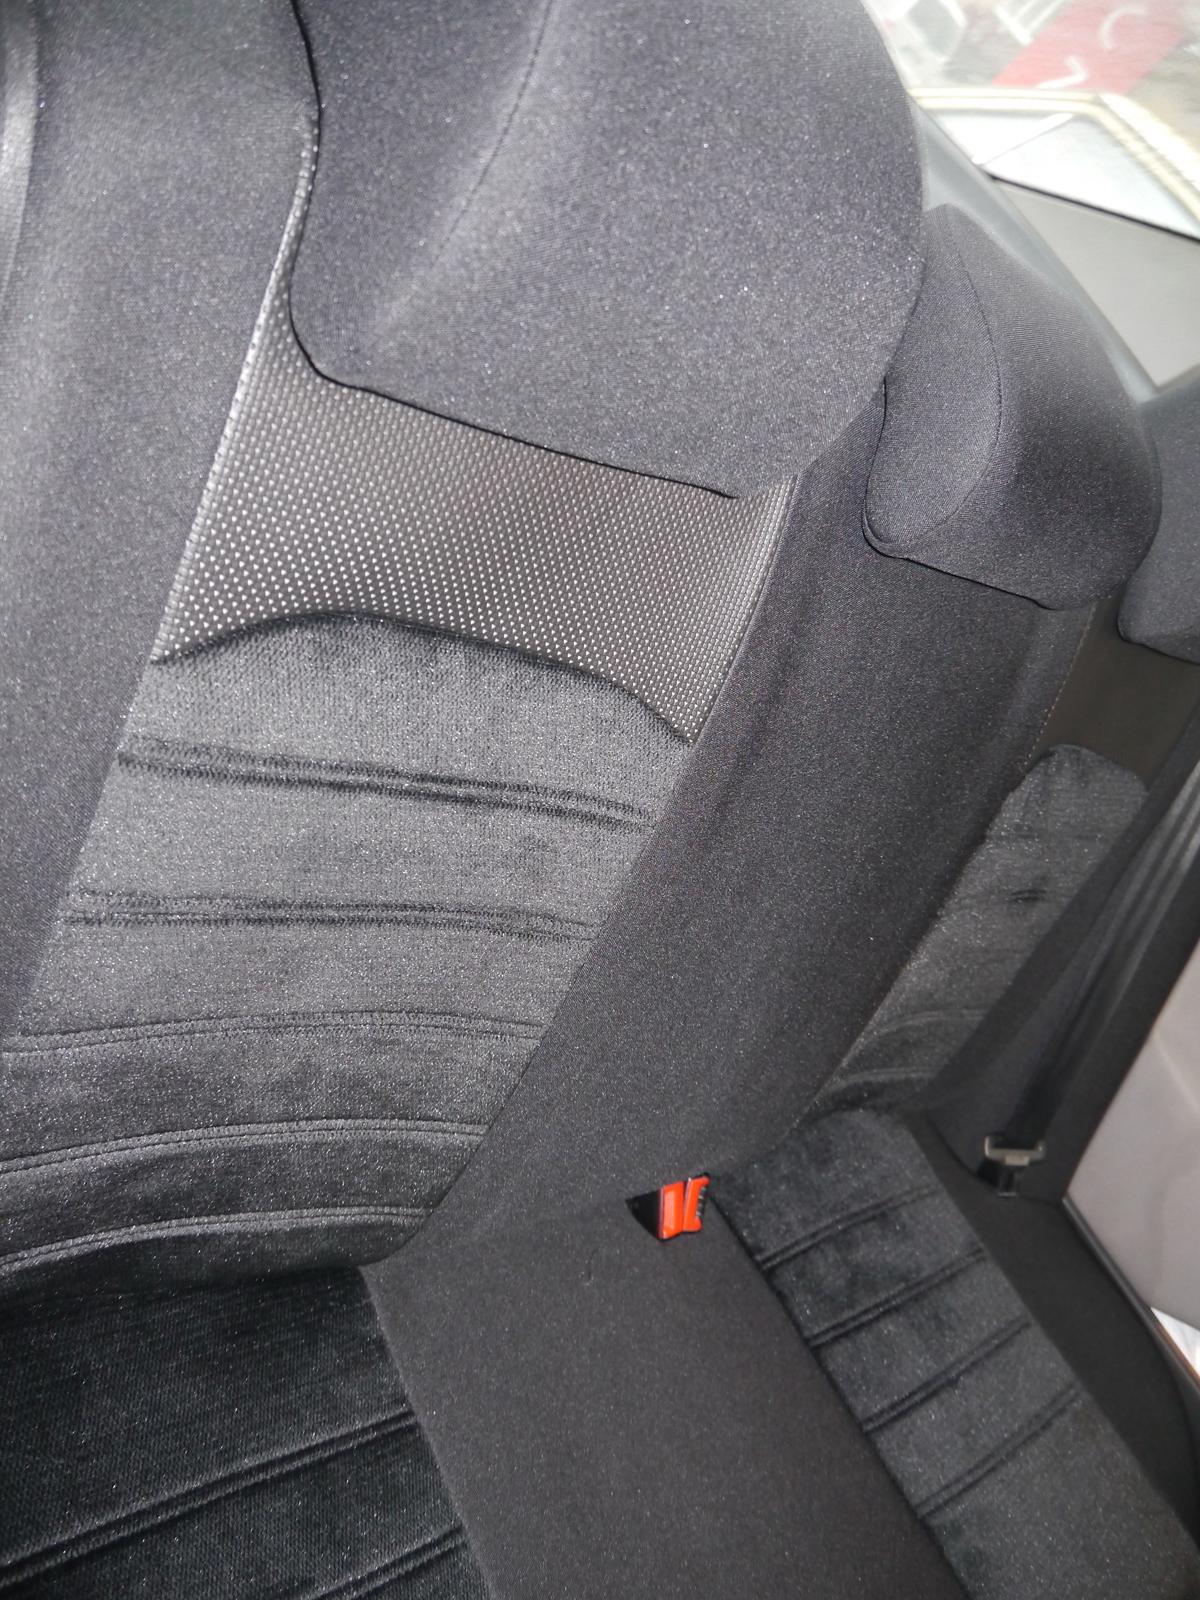 VVABRA Auto Sitzbezüge für Seat Leon e-Hybrid 5 Sitze, PU Leder Allwetter  Komfortabler Wasserdichtes Sitze Vorne und Hinten Autositzbezug